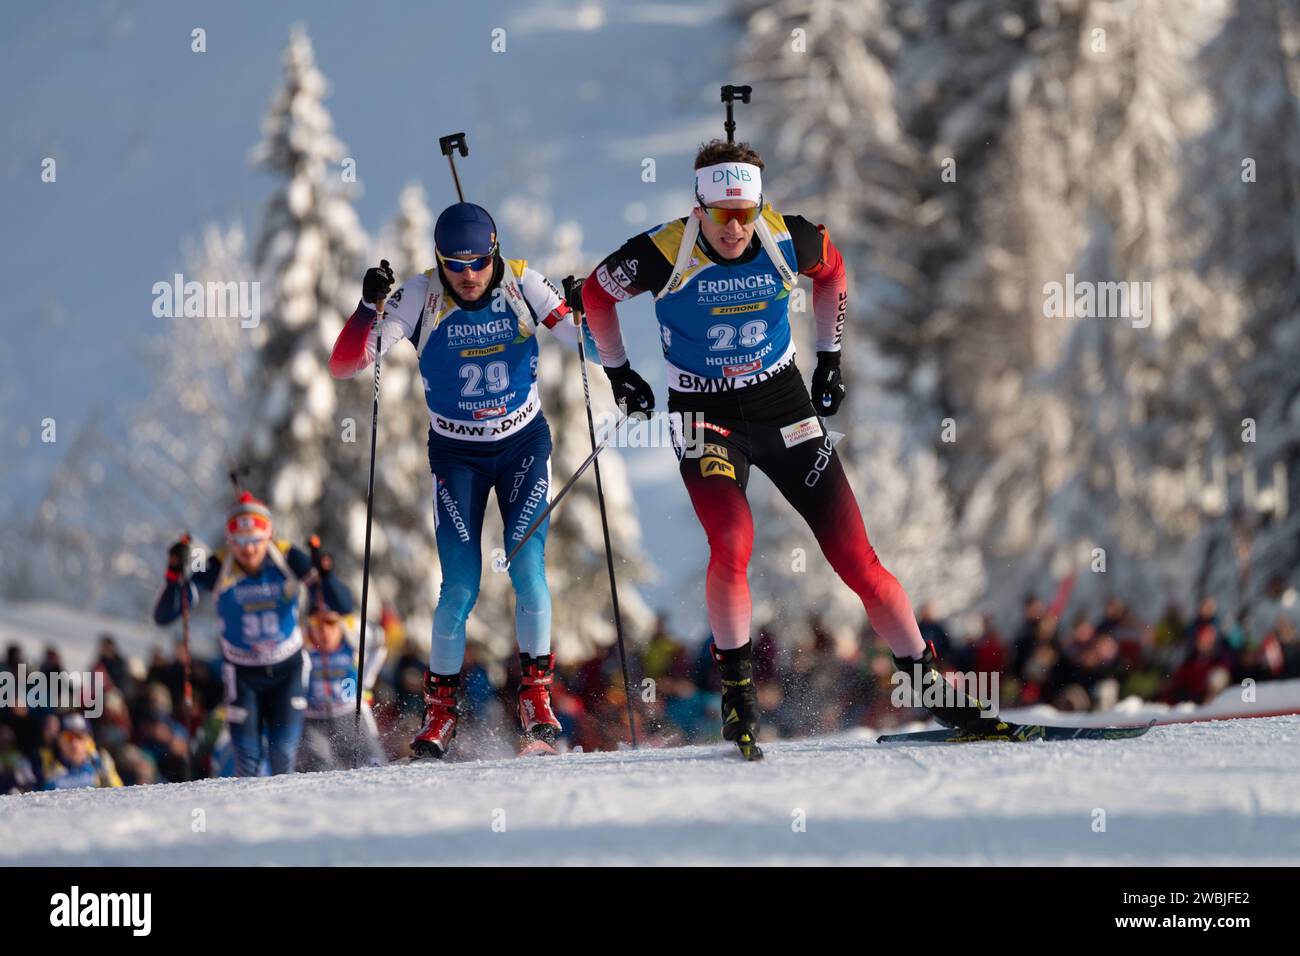 BOE Tarjei NOR Biathlon Welt Cup 12,5 KM Verfolgung der Herren à Hochfilzen, Österreich am 15.12.2018 Banque D'Images